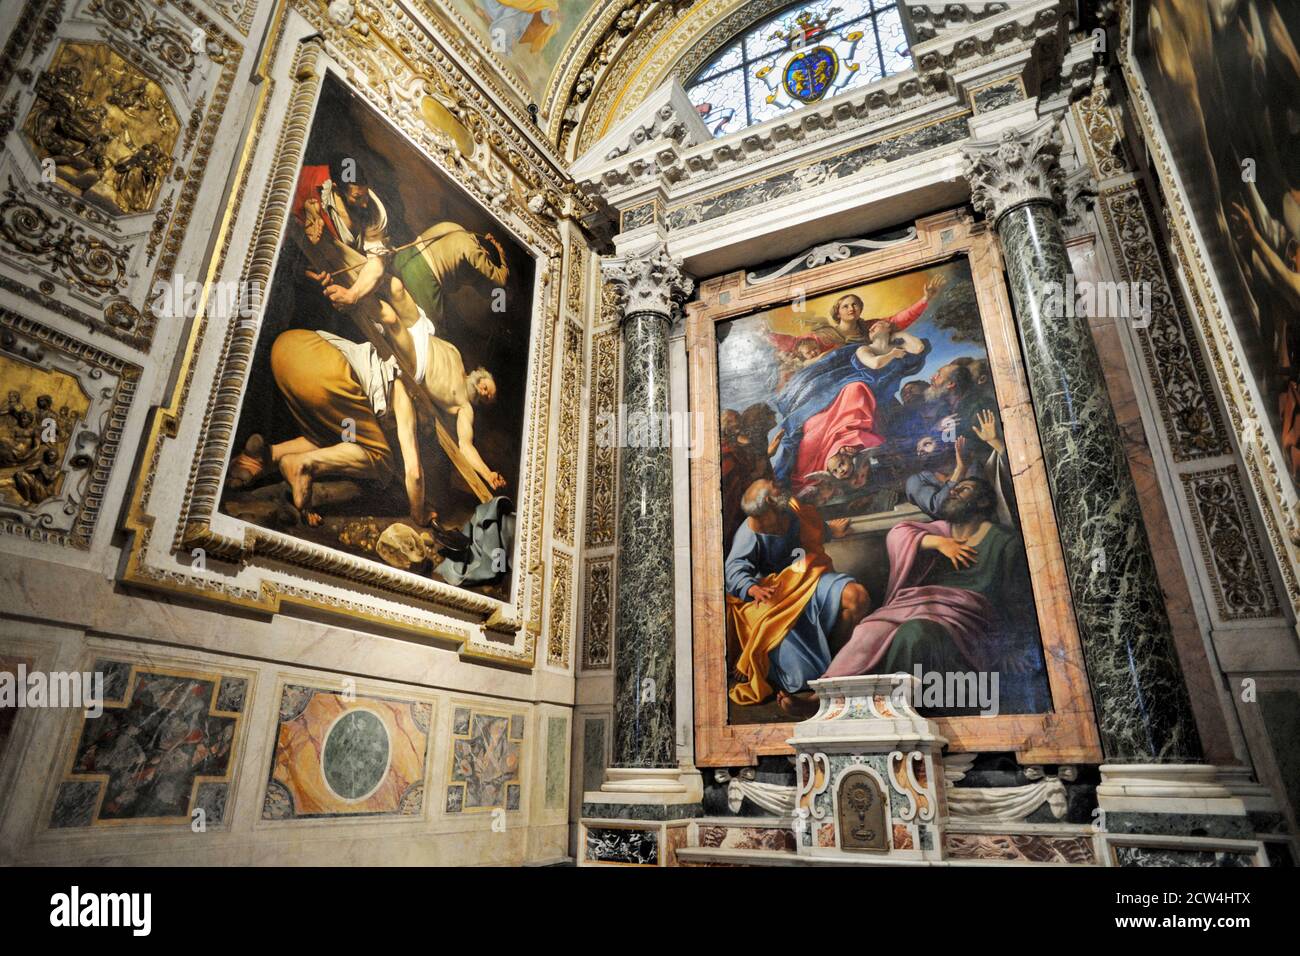 Italy, Rome, church of Santa Maria del Popolo, Cappella Cerasi, Caravaggio “Crocifissione di Pietro”, Annibale Carracci “Assunzione della Vergine” Stock Photo